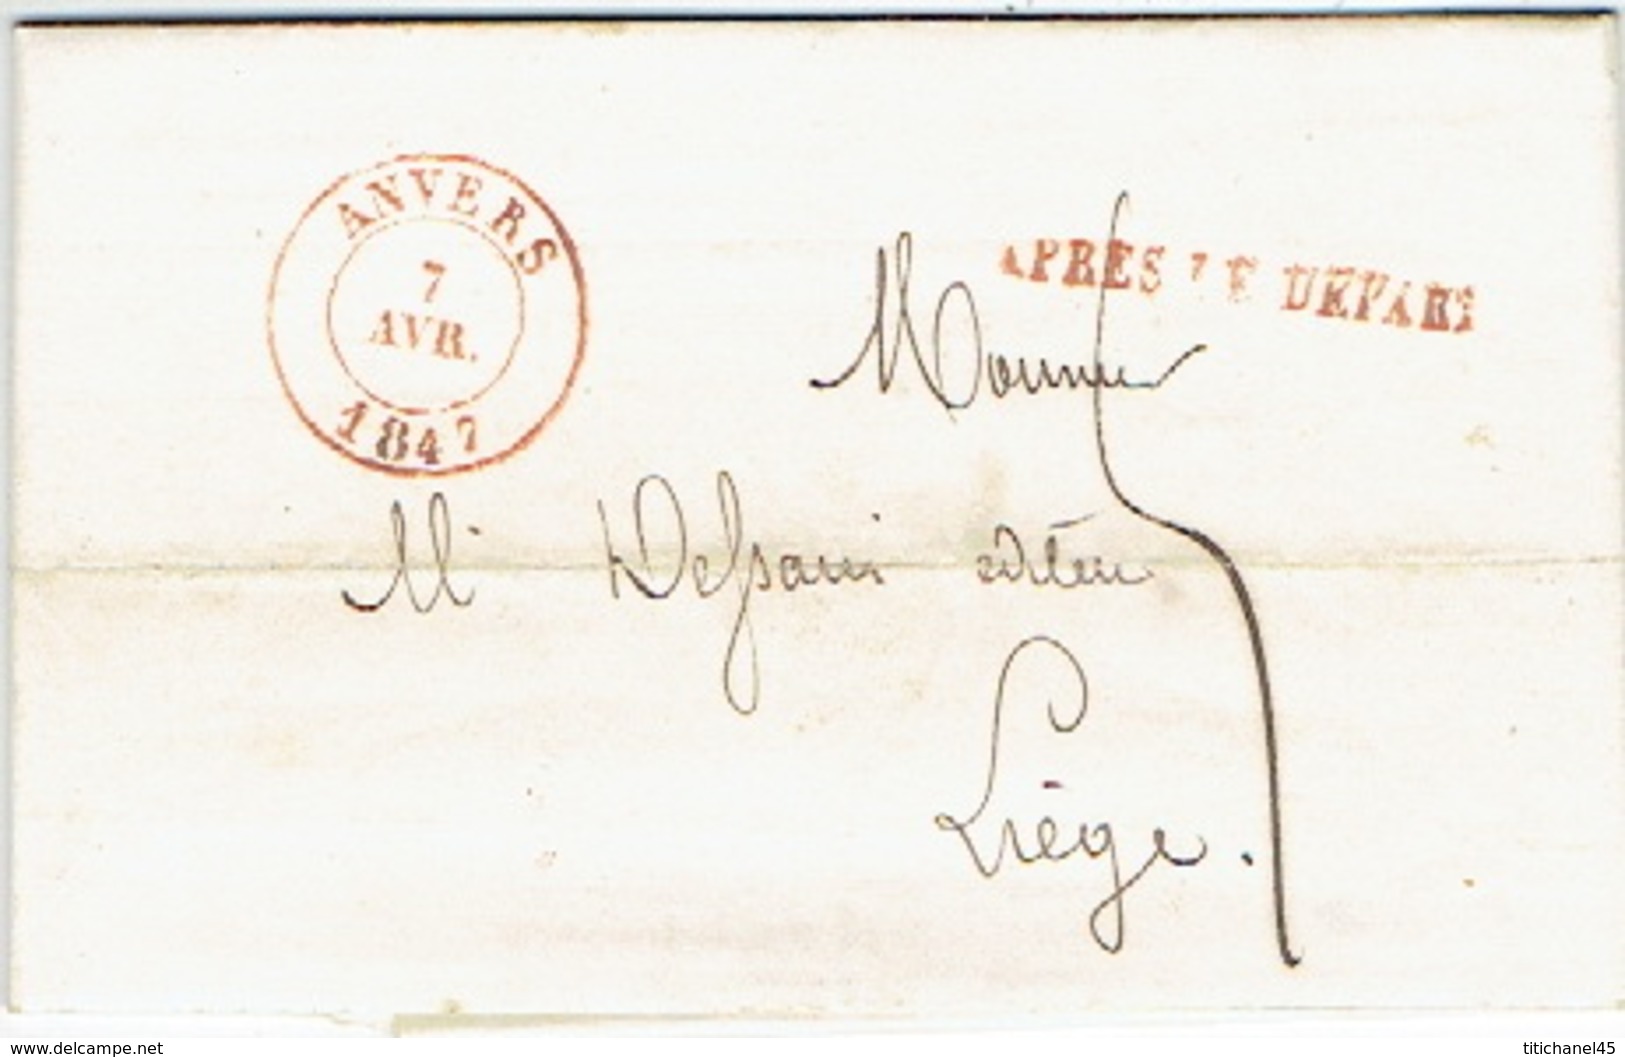 LAC D'ANVERS Datée Du 15 Juin 1847 Vers LIEGE + Griffe "APRES LE DEPART" - Lettre Signée M. ANCELLE - 1830-1849 (Belgique Indépendante)